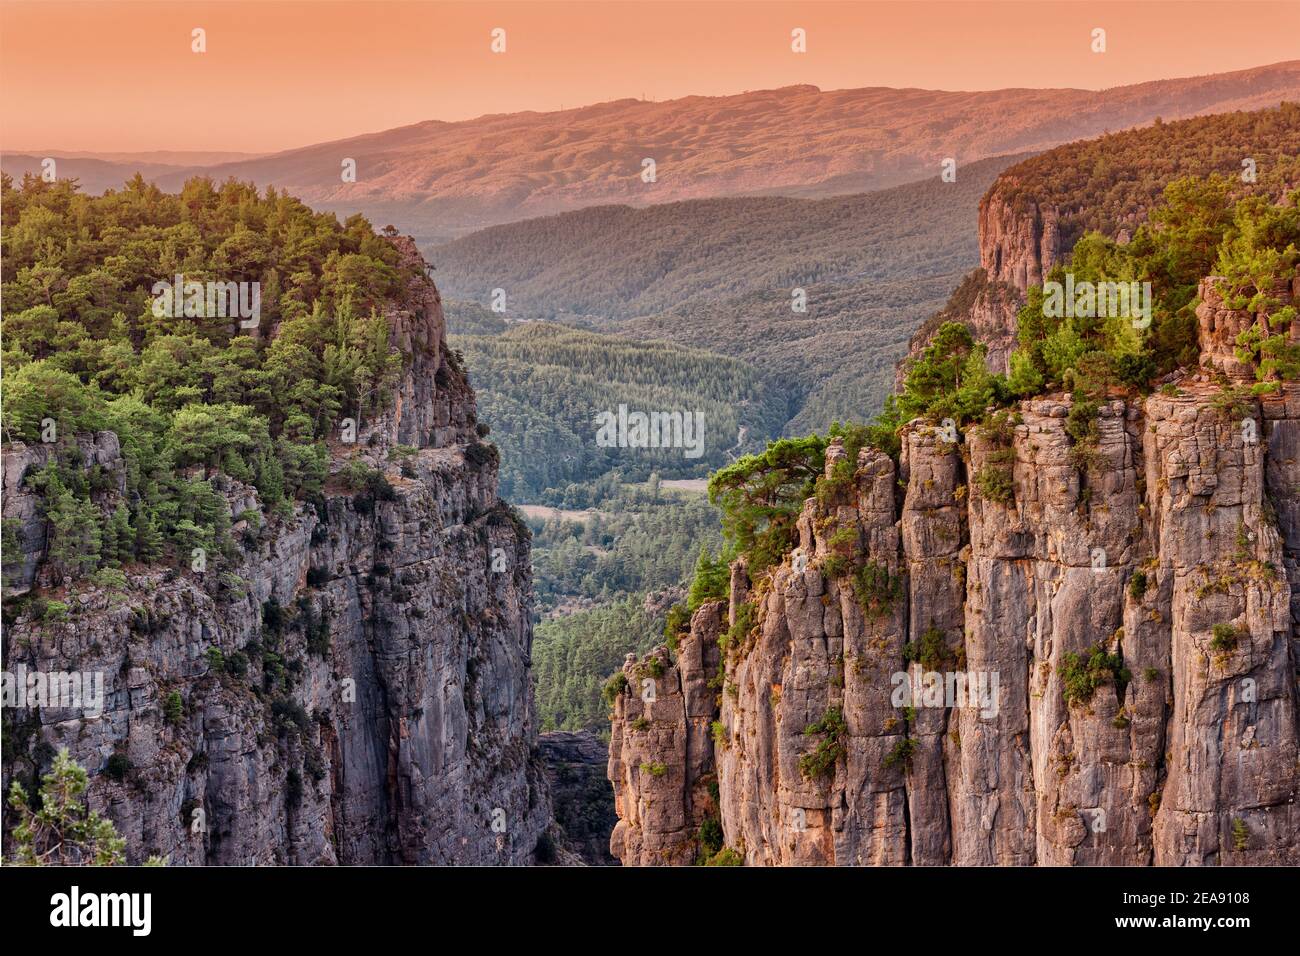 Vista panoramica saturata e contrastante del canyon di Tazi nel Parco naturale di Koprulu in Turchia. Meraviglie naturali e attrazioni turistiche Foto Stock